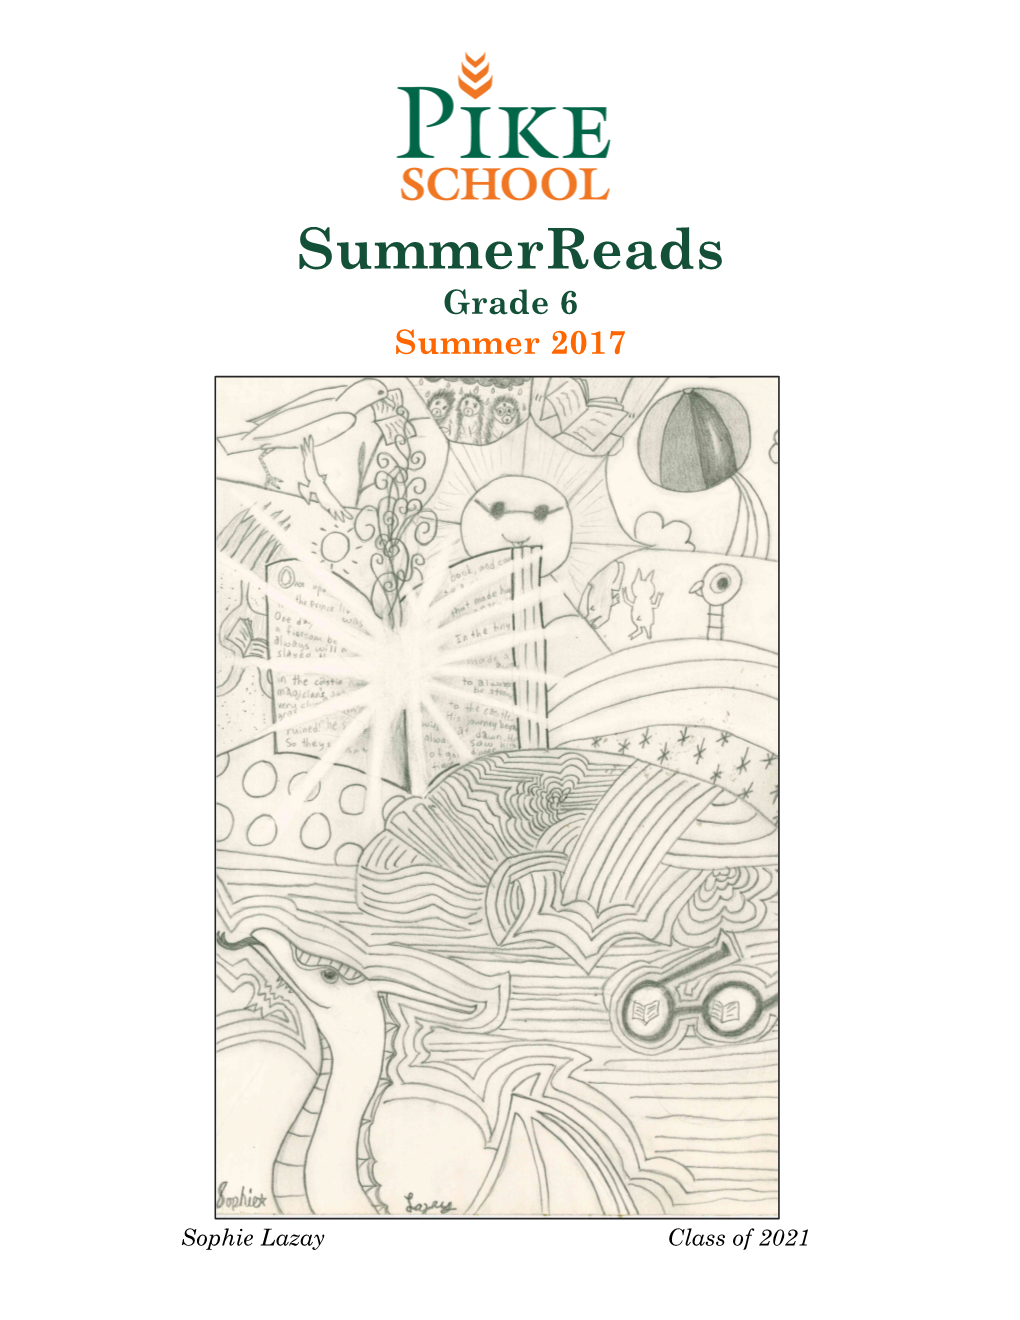 Summerreads Grade 6 Summer 2017